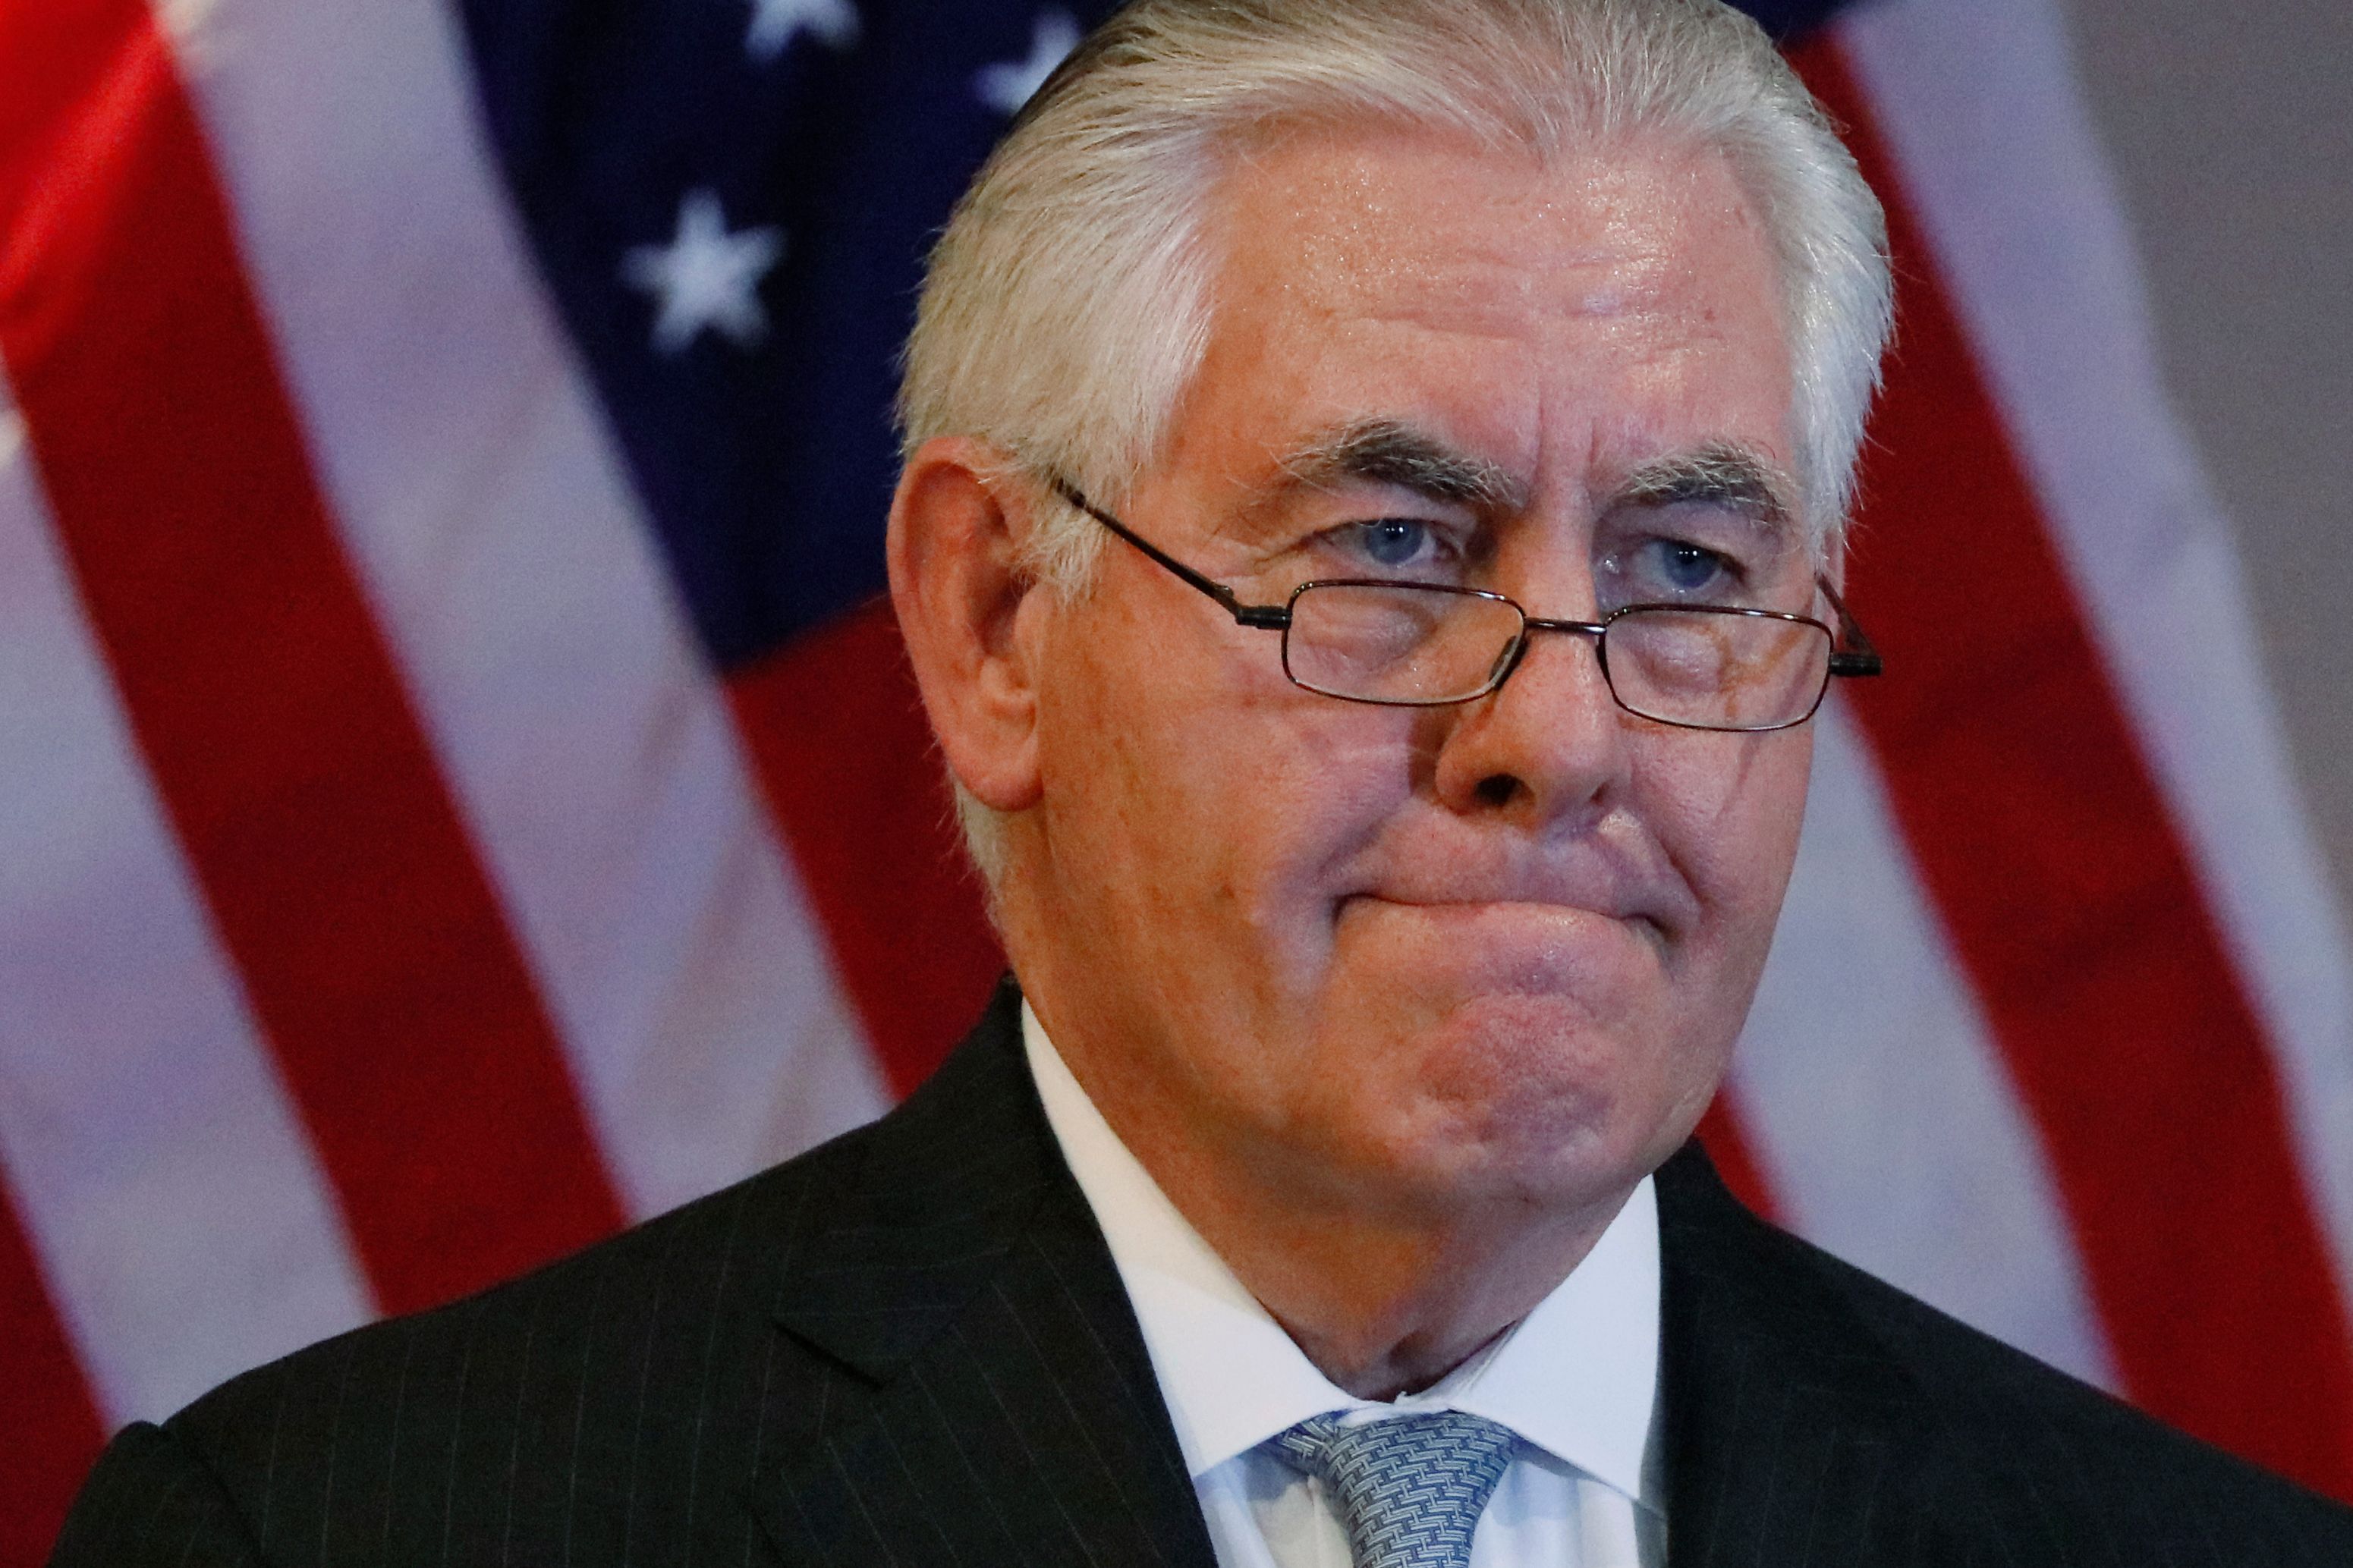 Tillerson’s firing worries some Africa experts